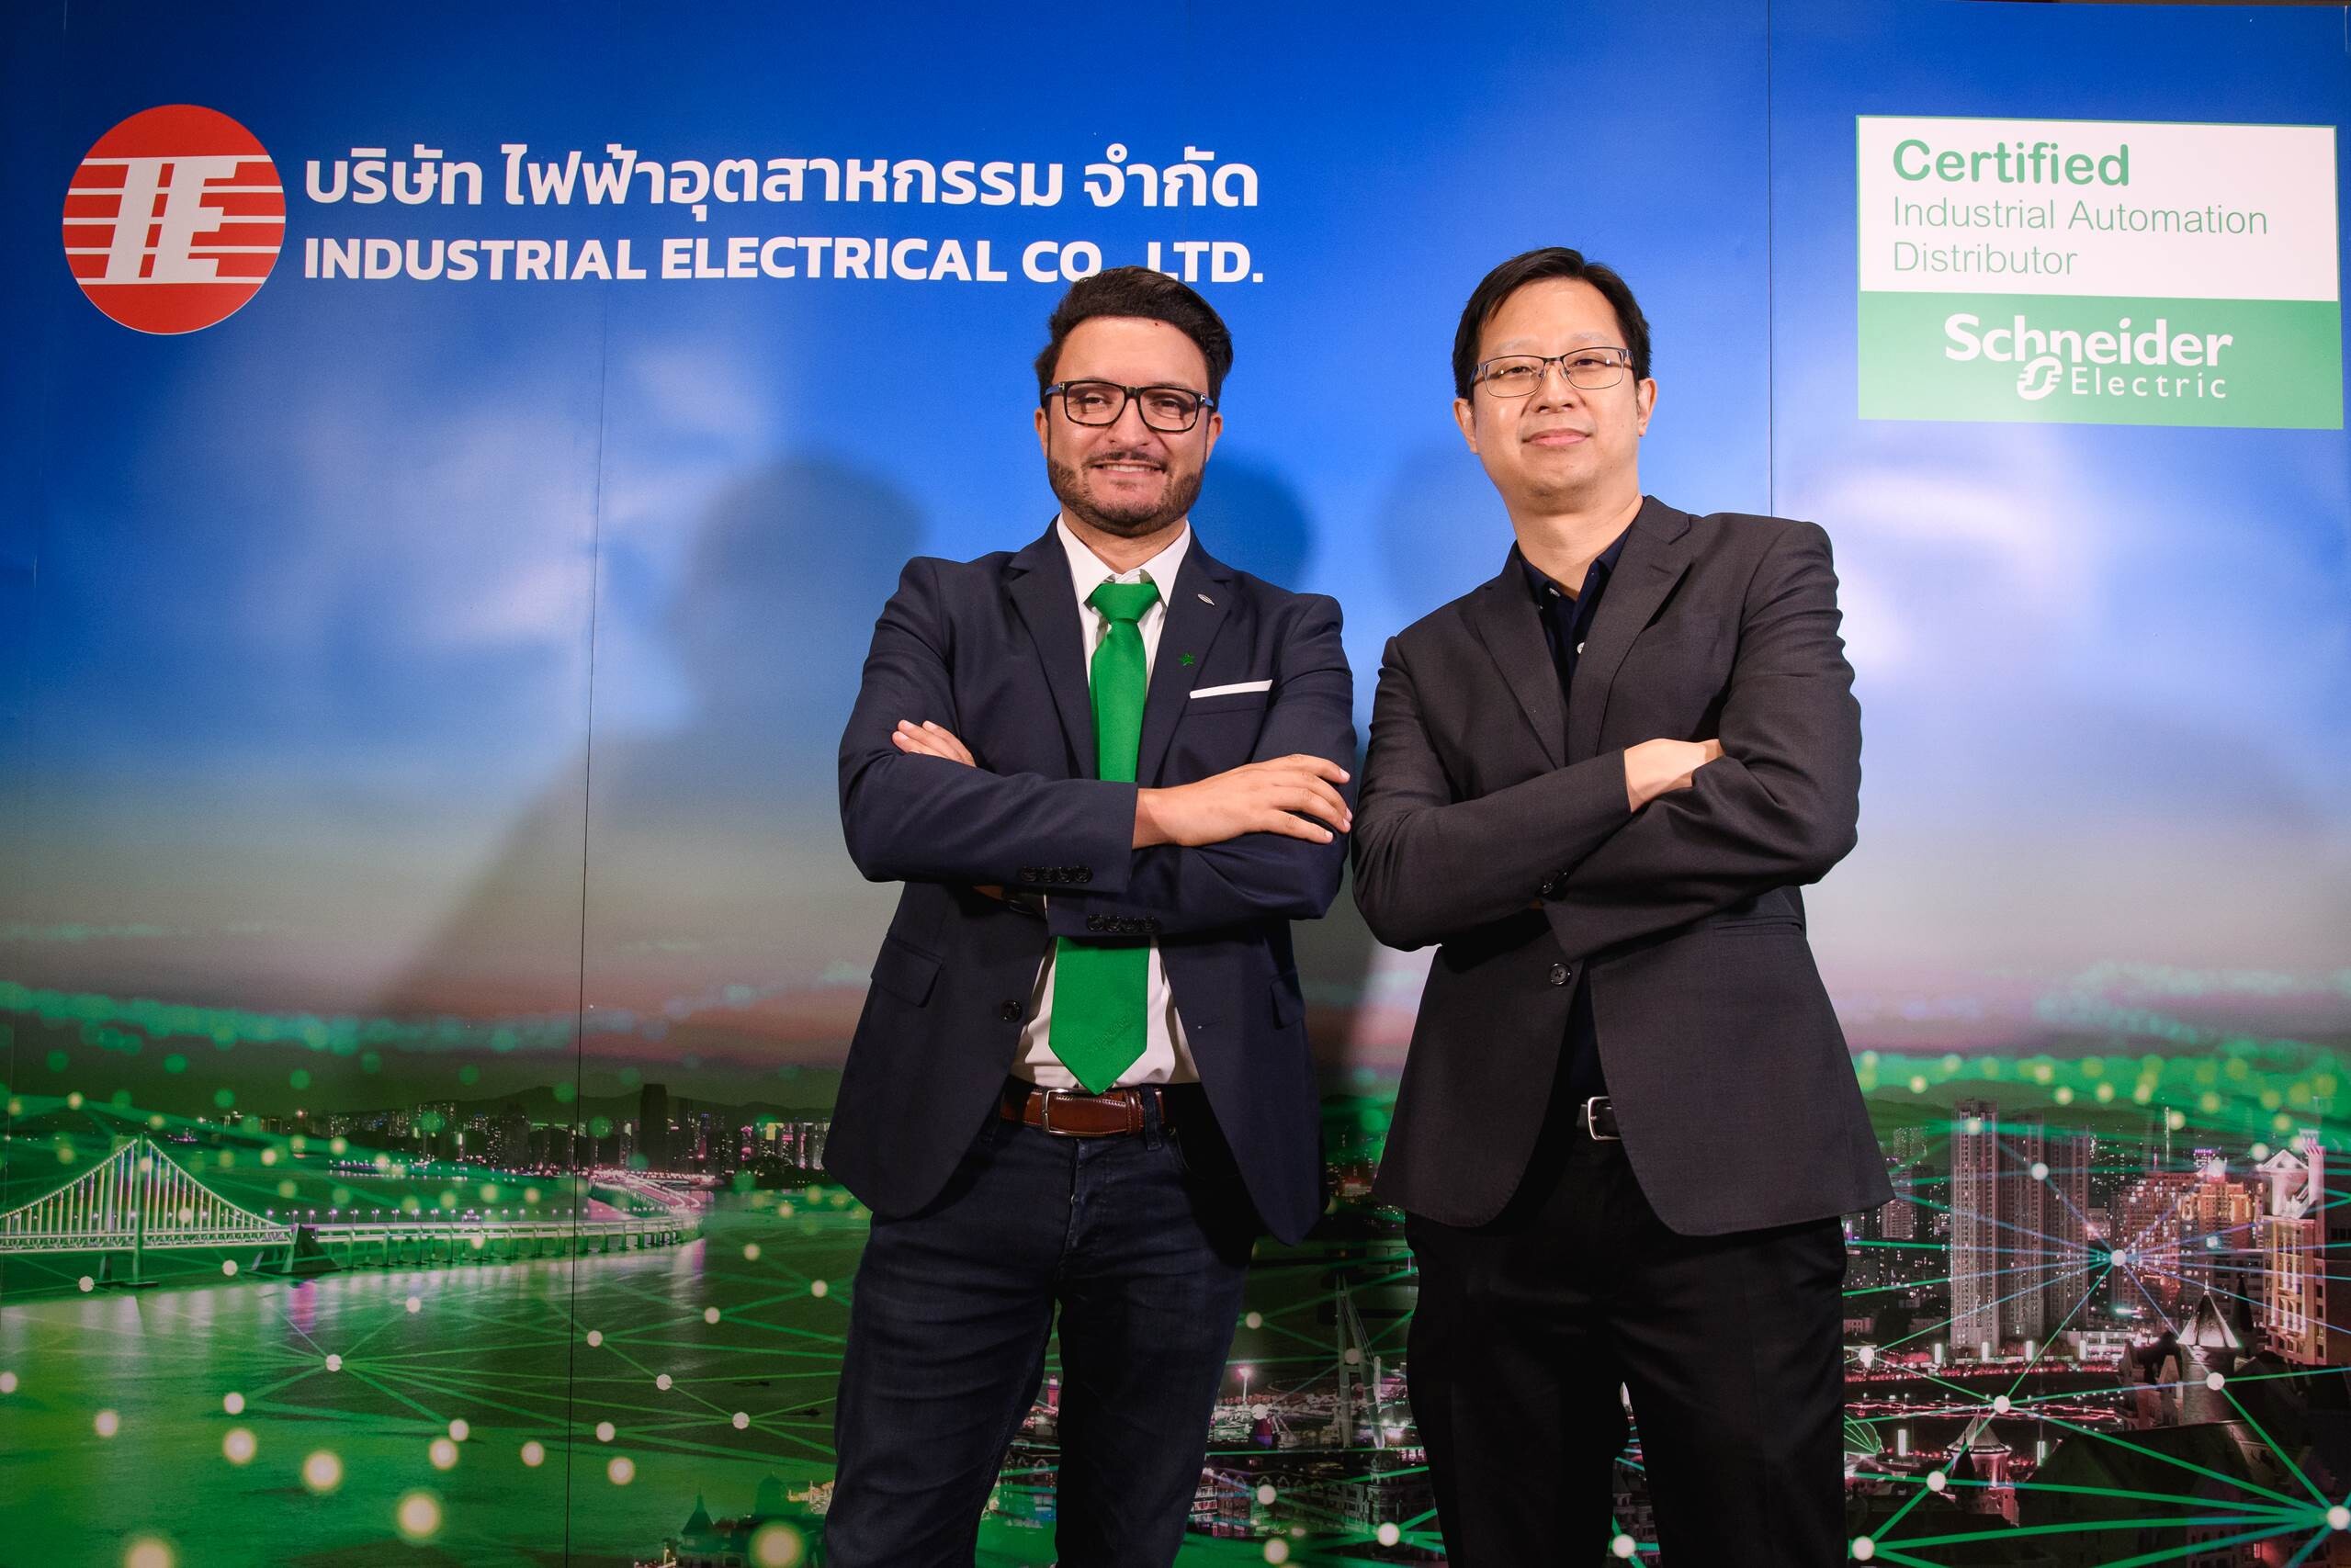 ชไนเดอร์ อิเล็คทริค ประเทศไทย ร่วมกับ บริษัท ไฟฟ้าอุตสาหกรรม จำกัด จัดงาน Innovation and Smart Manufacturing Solution อย่างยิ่งใหญ่